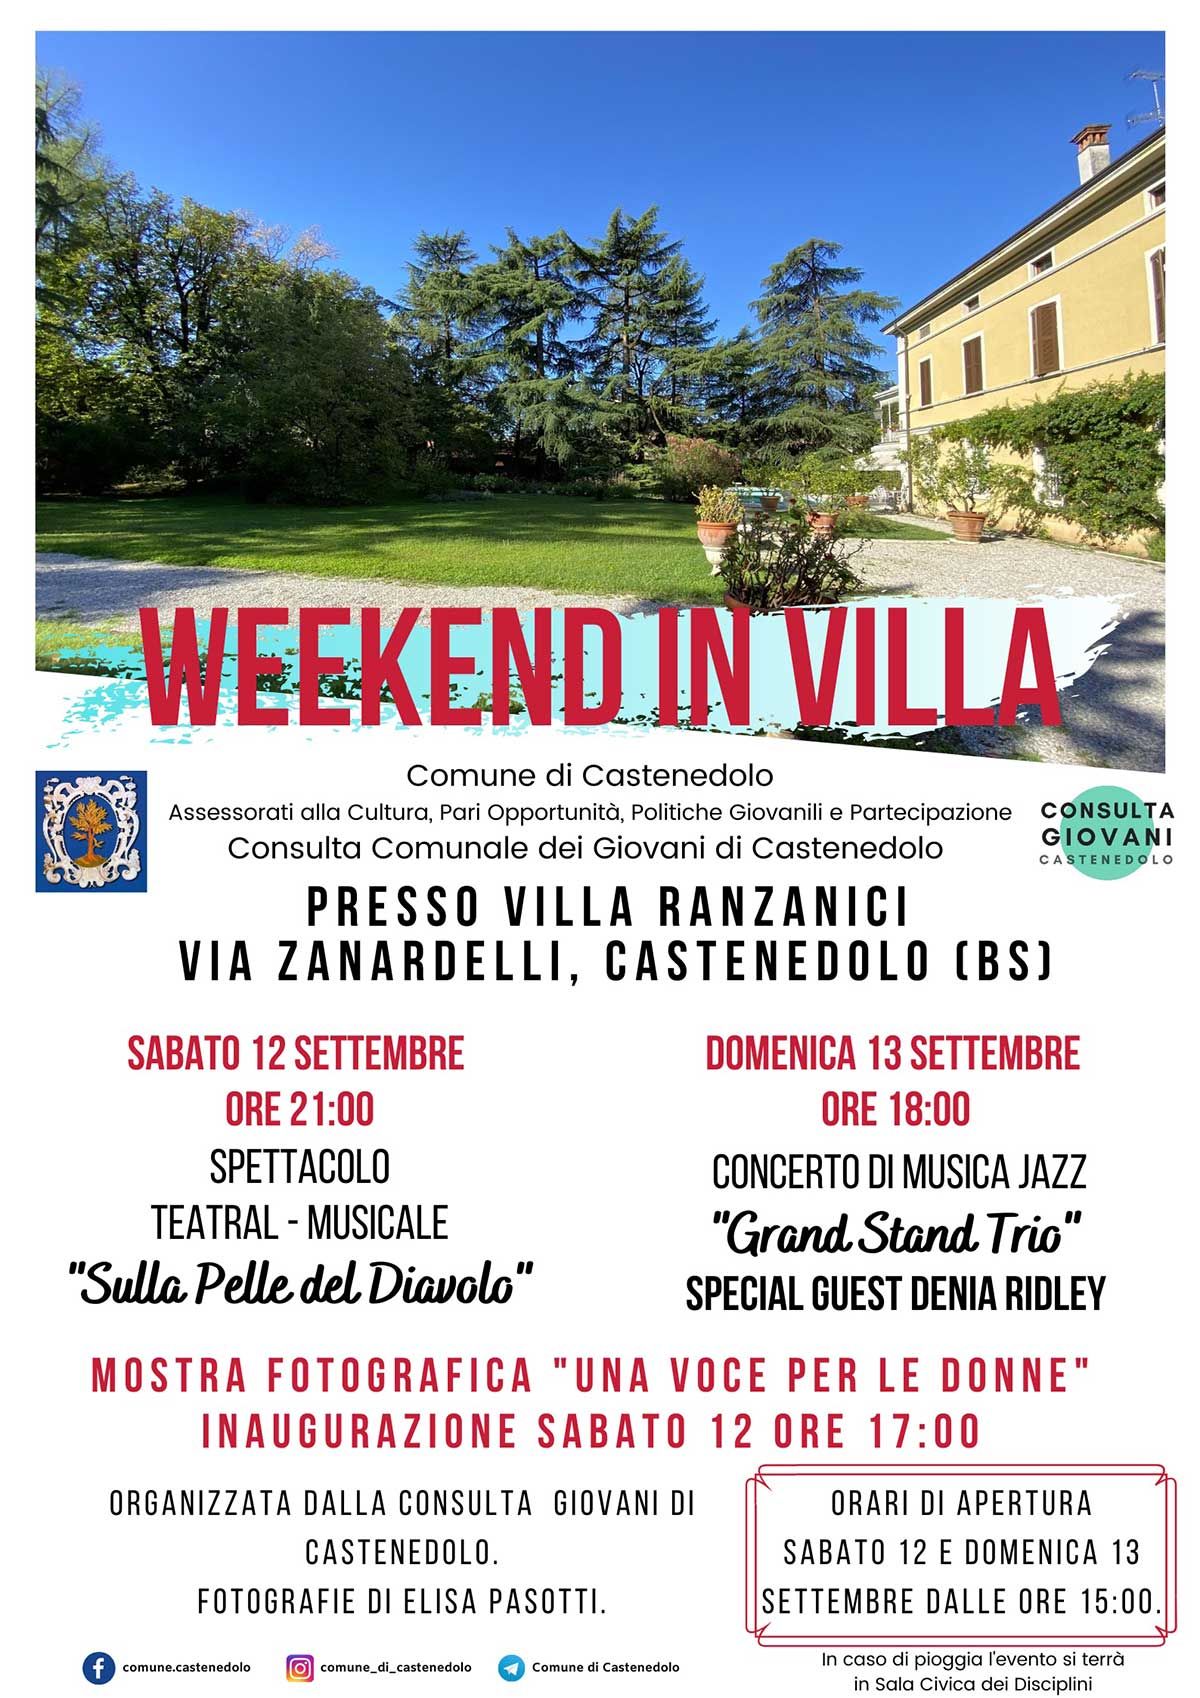 Weekend-in-villa-castenedolo-settembre-2020